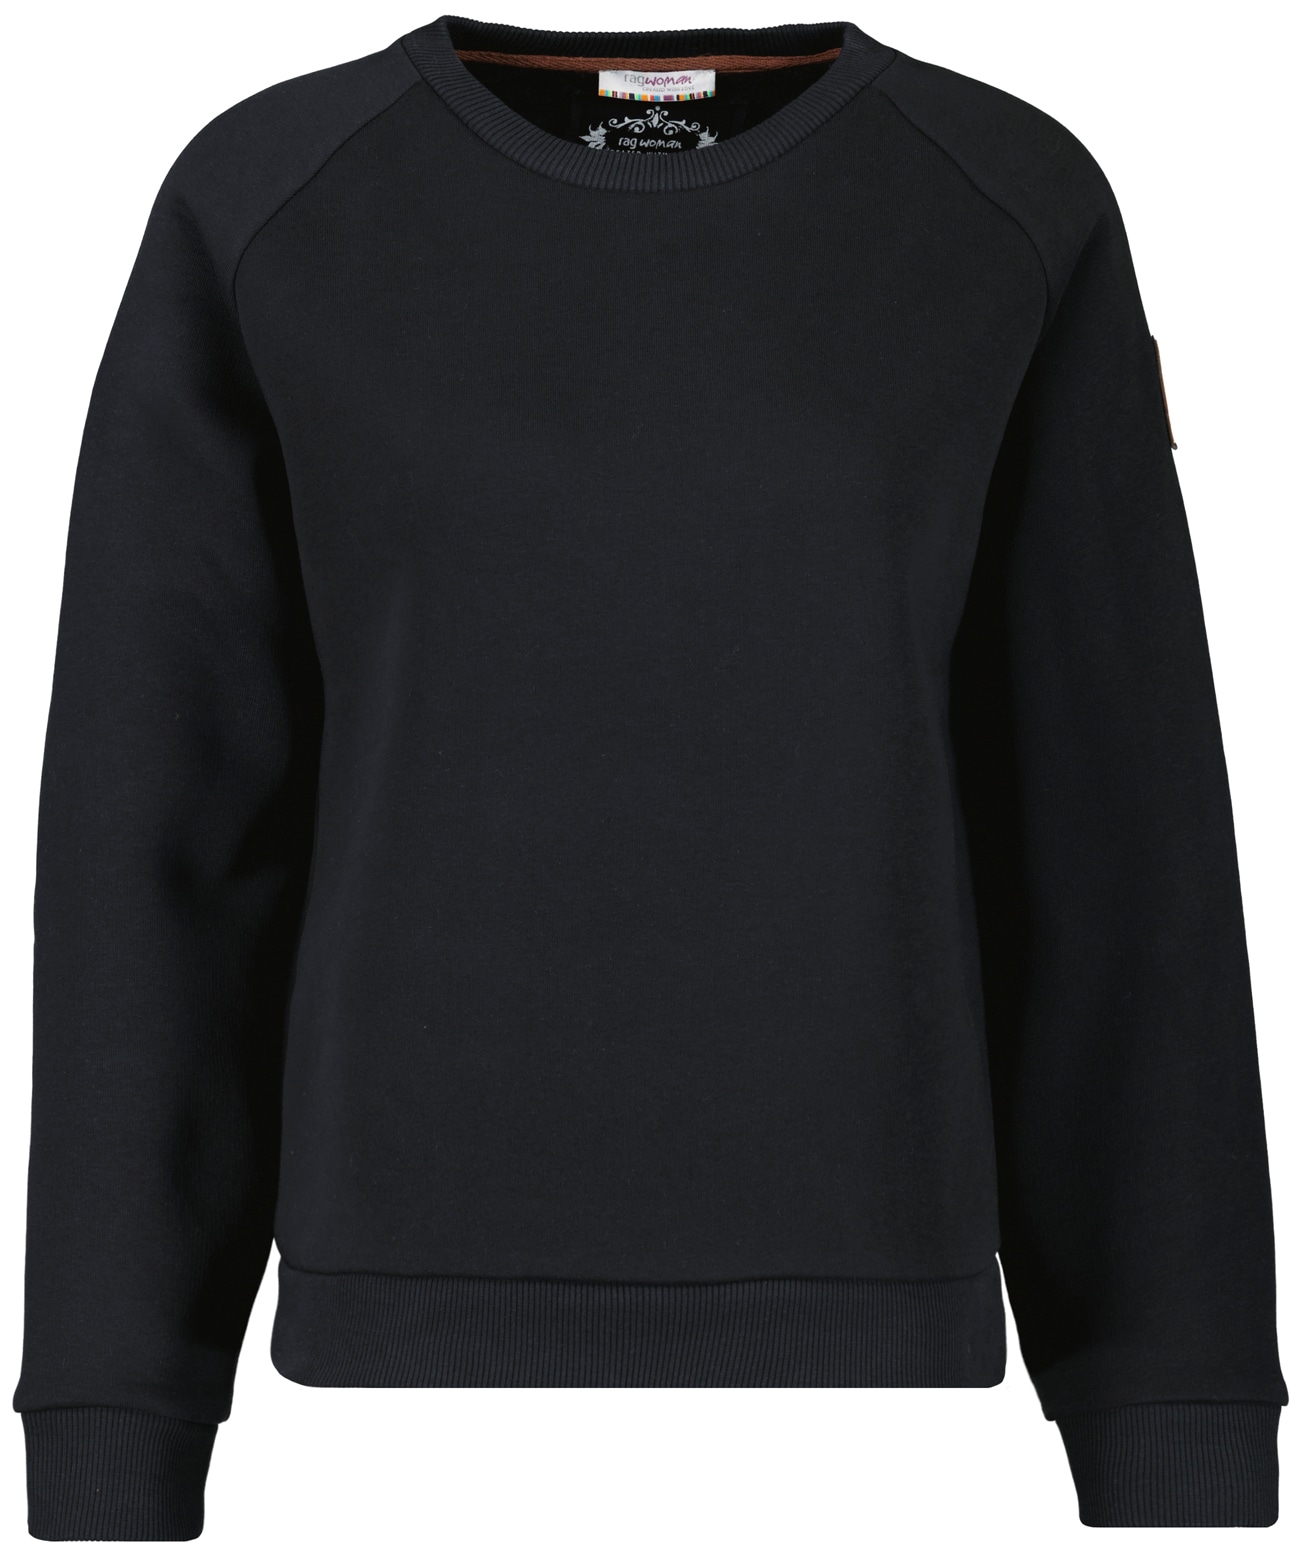 RAGMAN | Sweatshirt BAUR kaufen